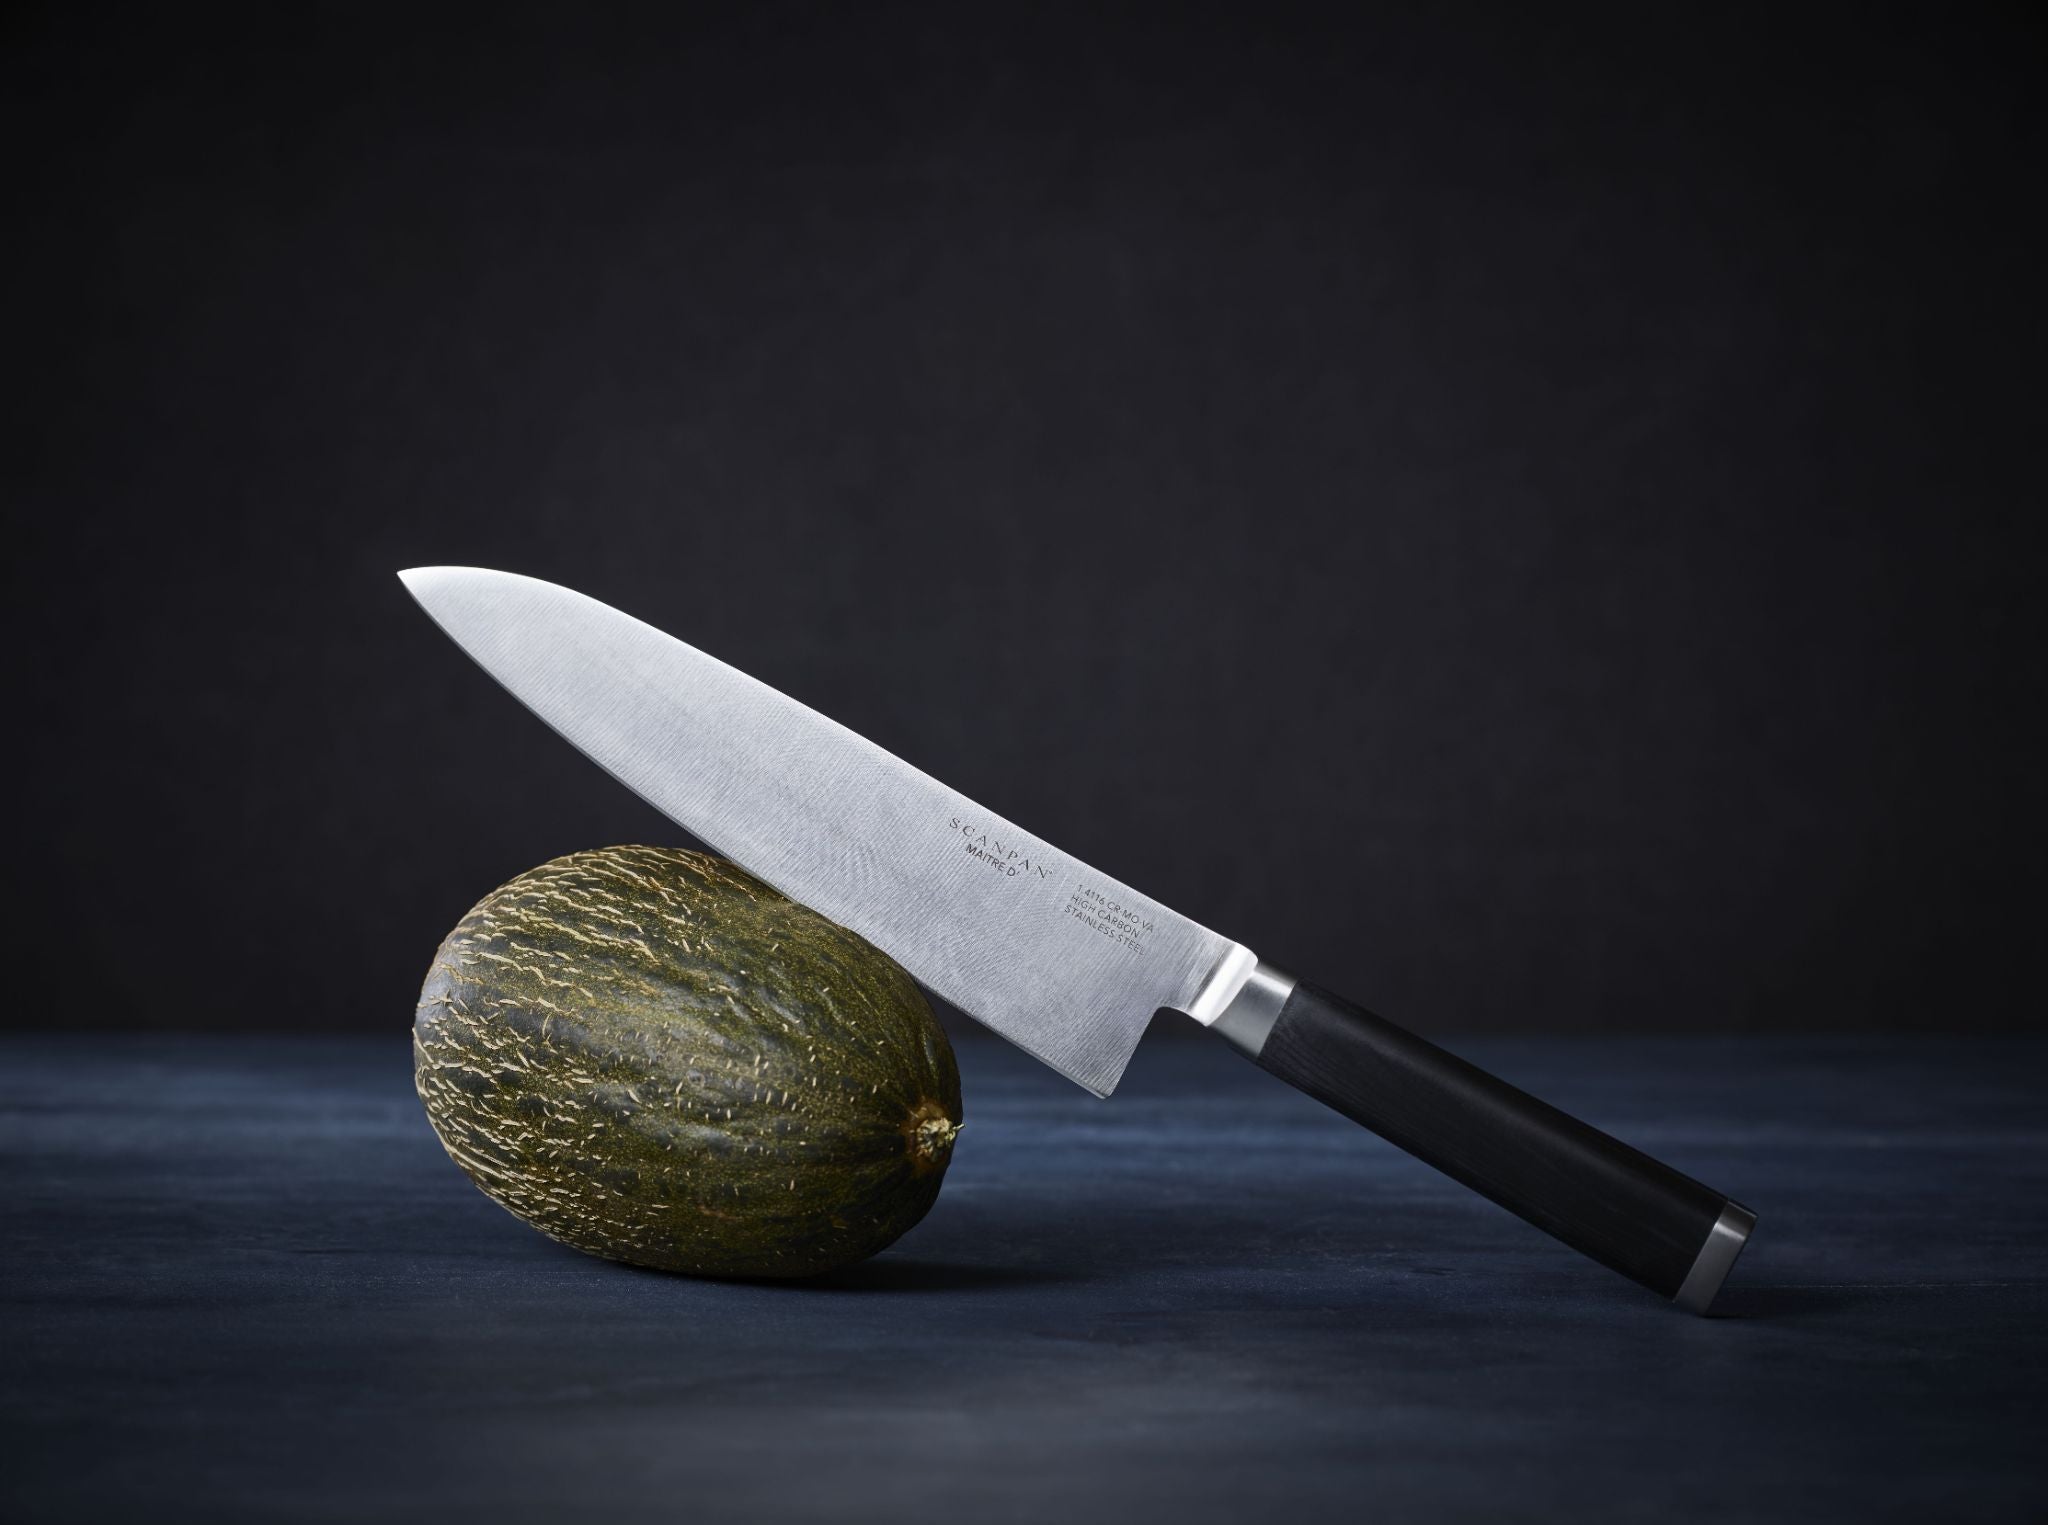 SCANPAN Maitre D Cooks Knife 22cm